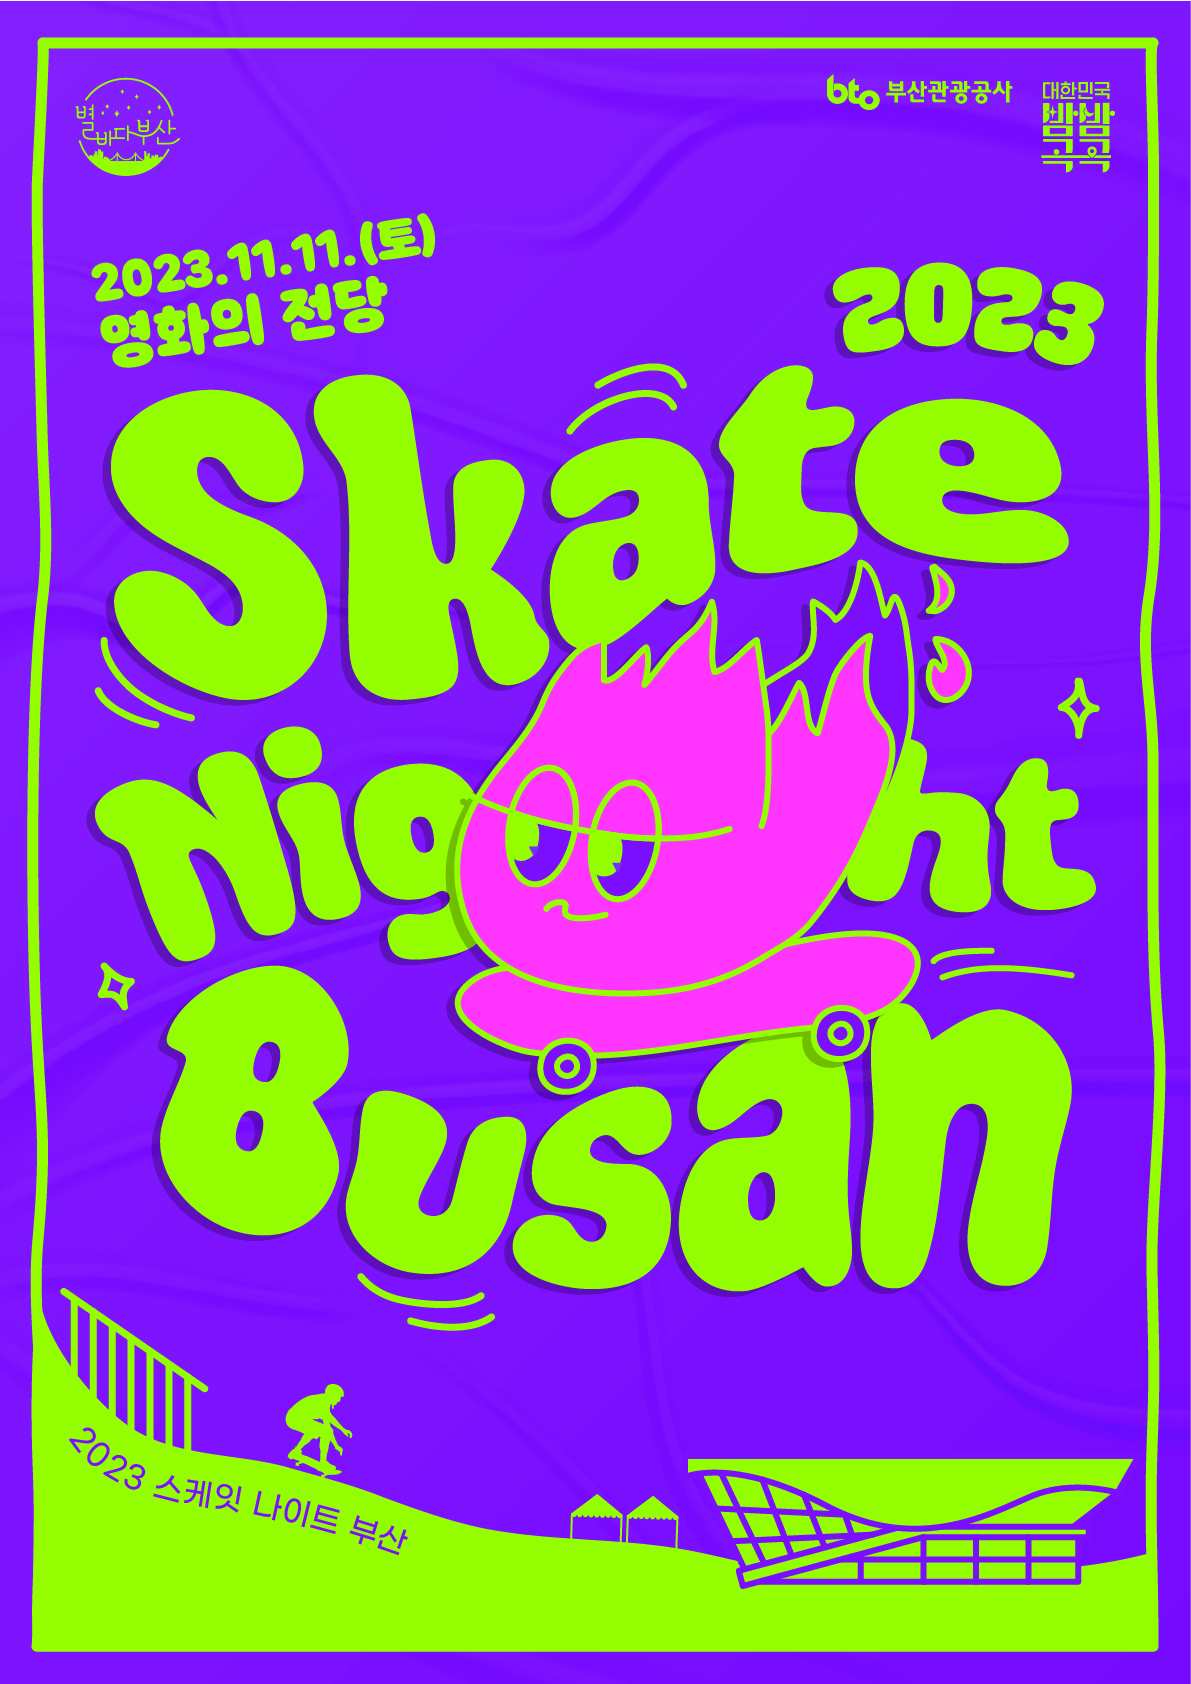 2023 Skate Night Busan